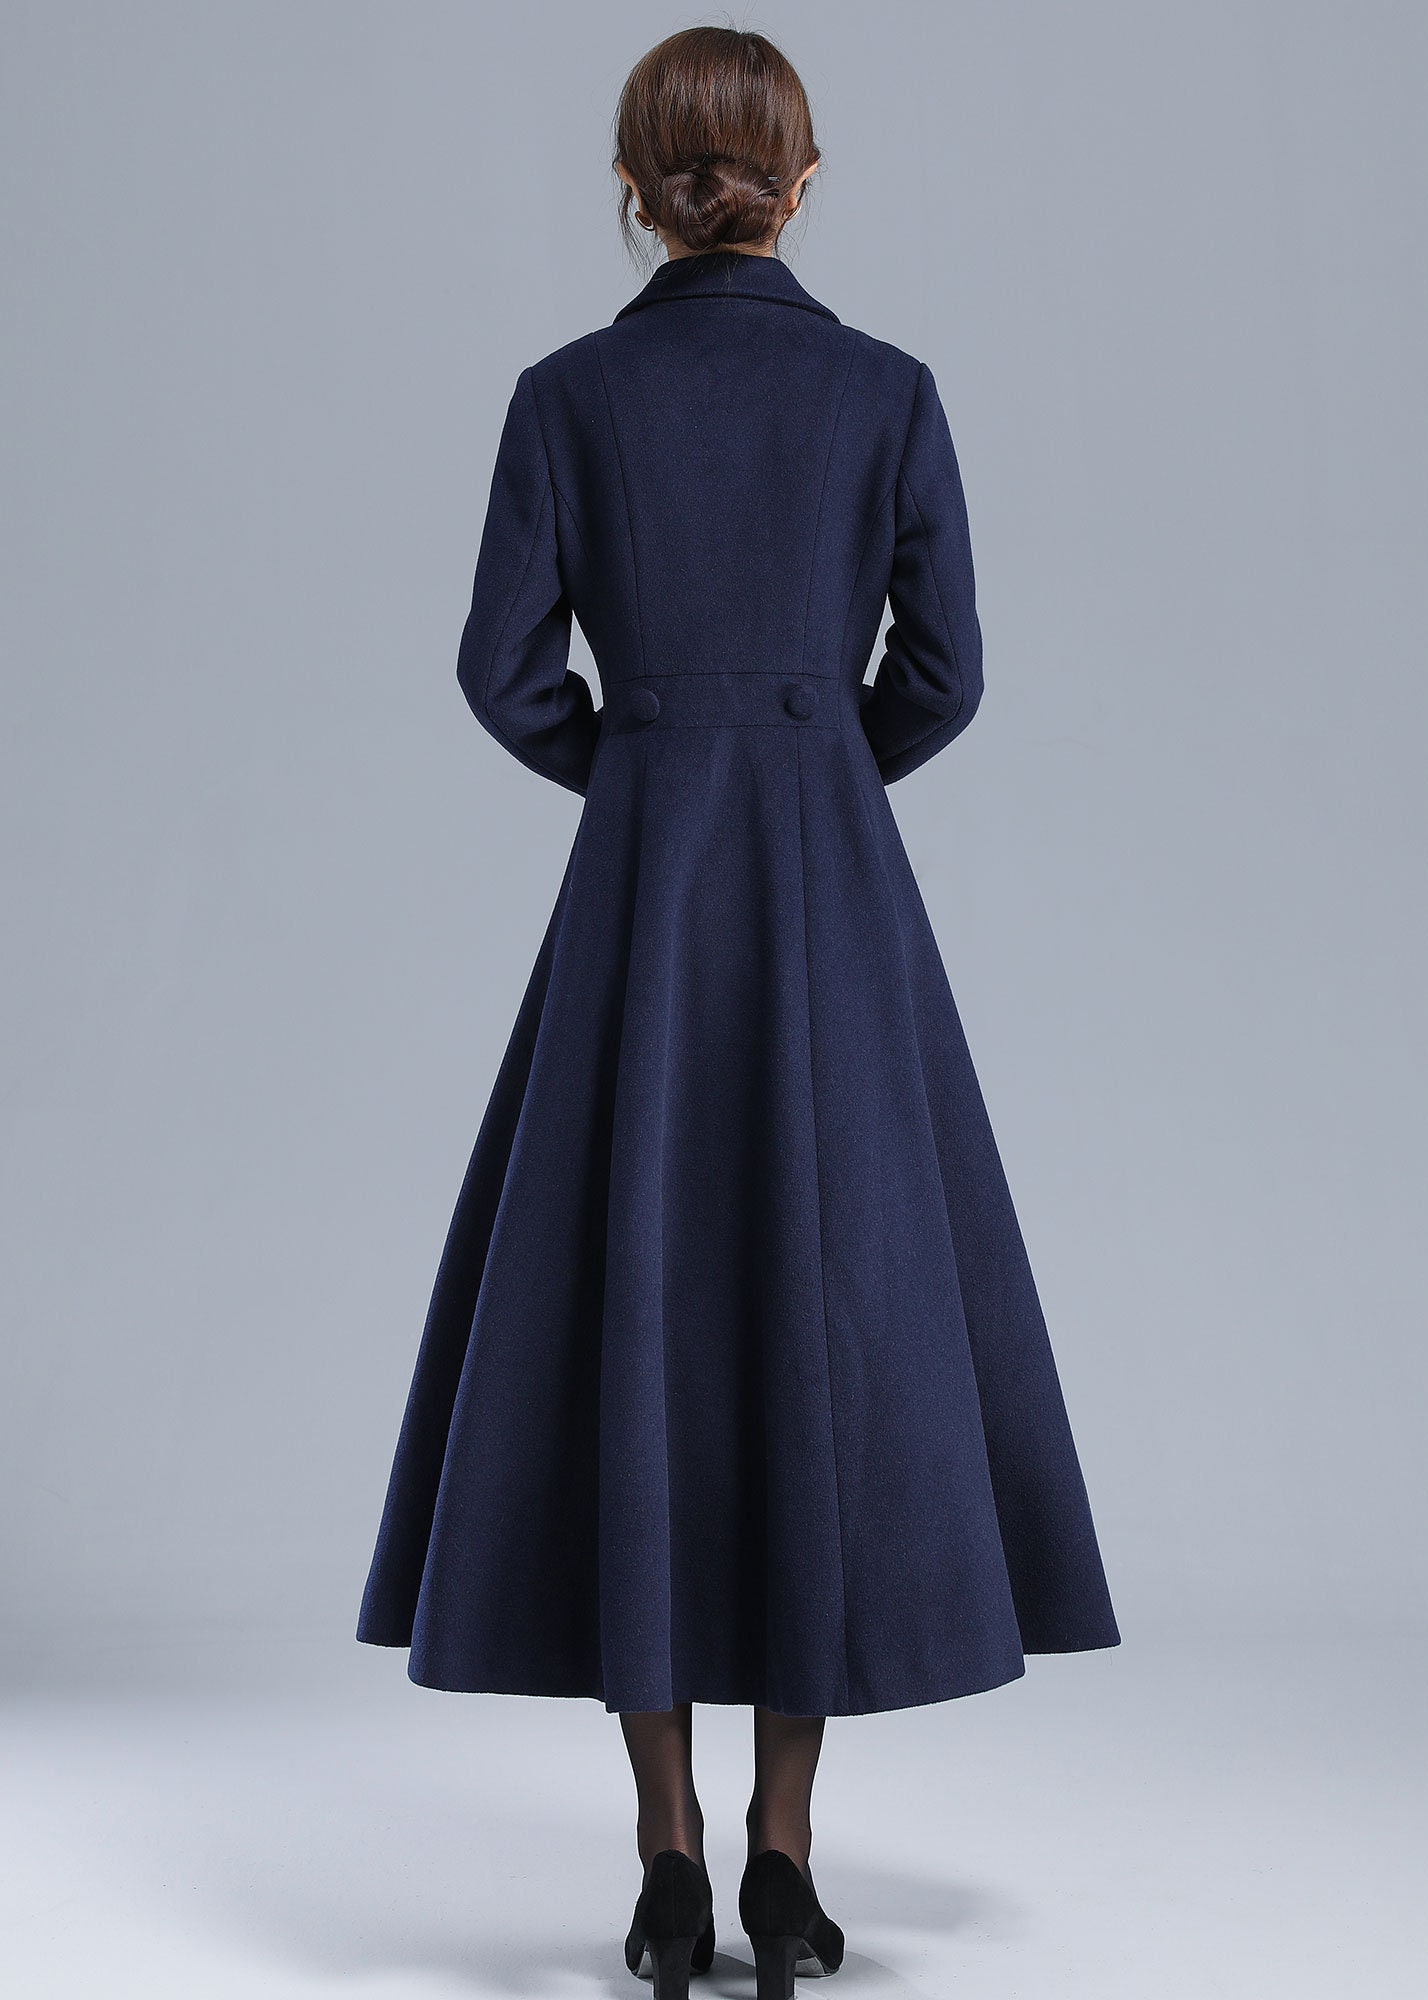 Wool Coat Black Coat Swing Coat Long Coat Long Coat Dress, 51% OFF